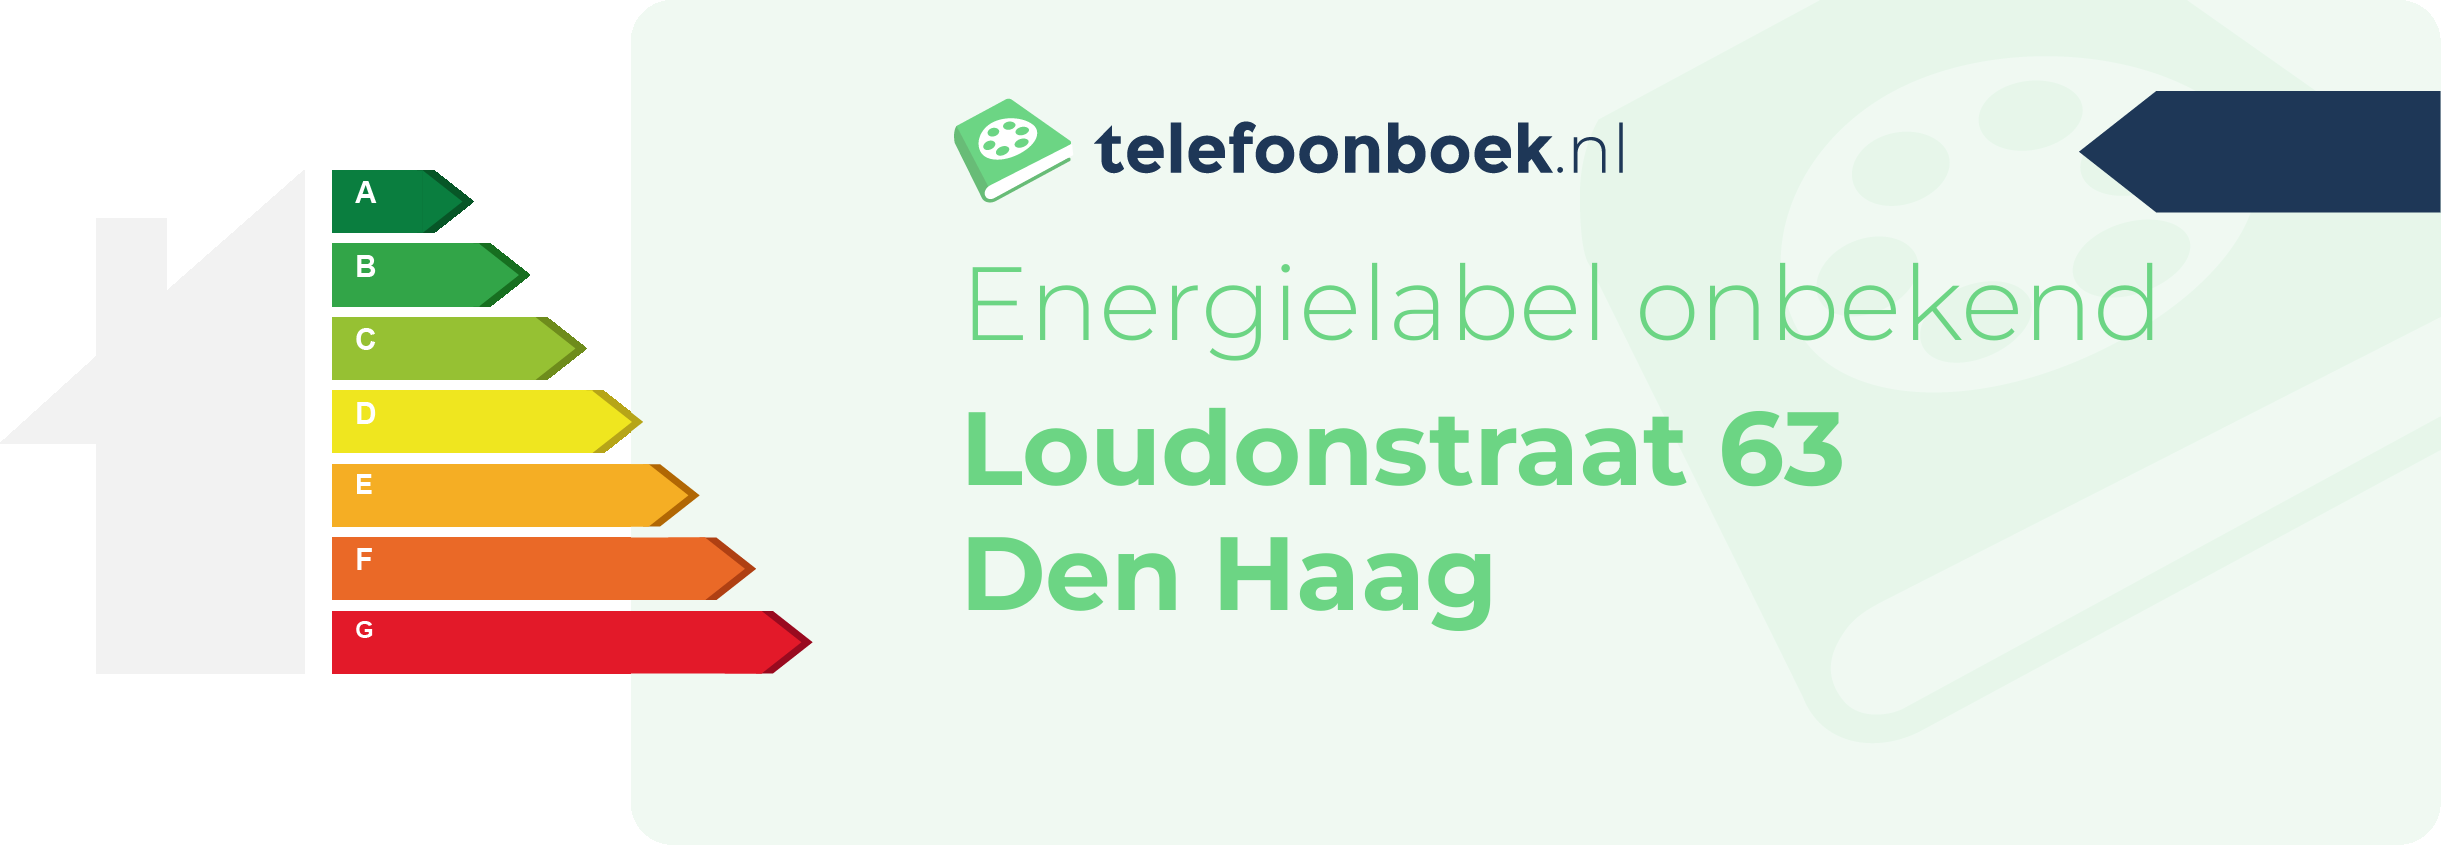 Energielabel Loudonstraat 63 Den Haag